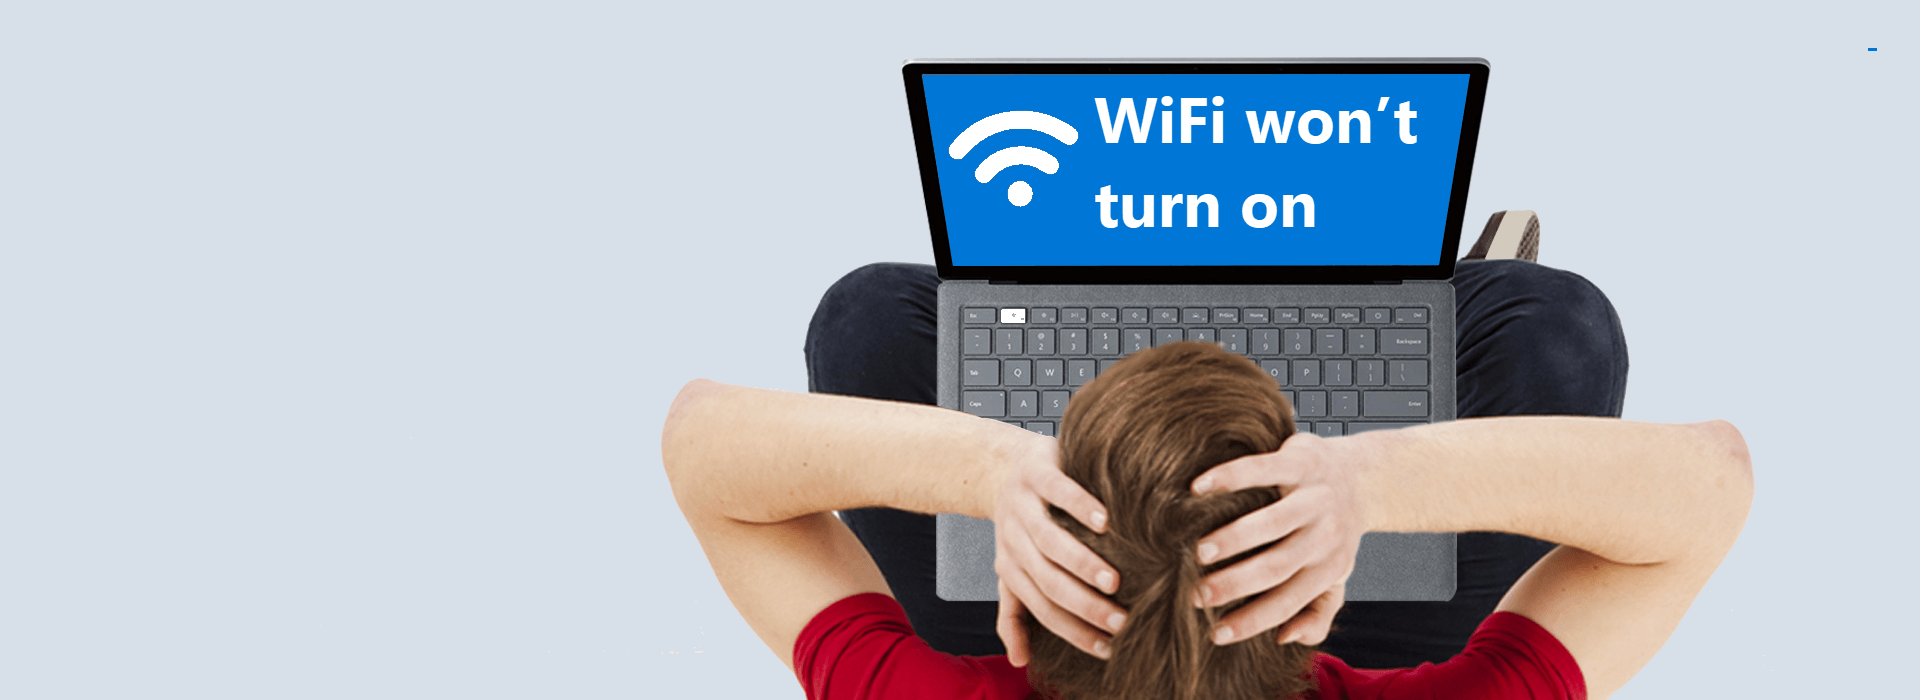 linux mint wireless wont turn on wifi